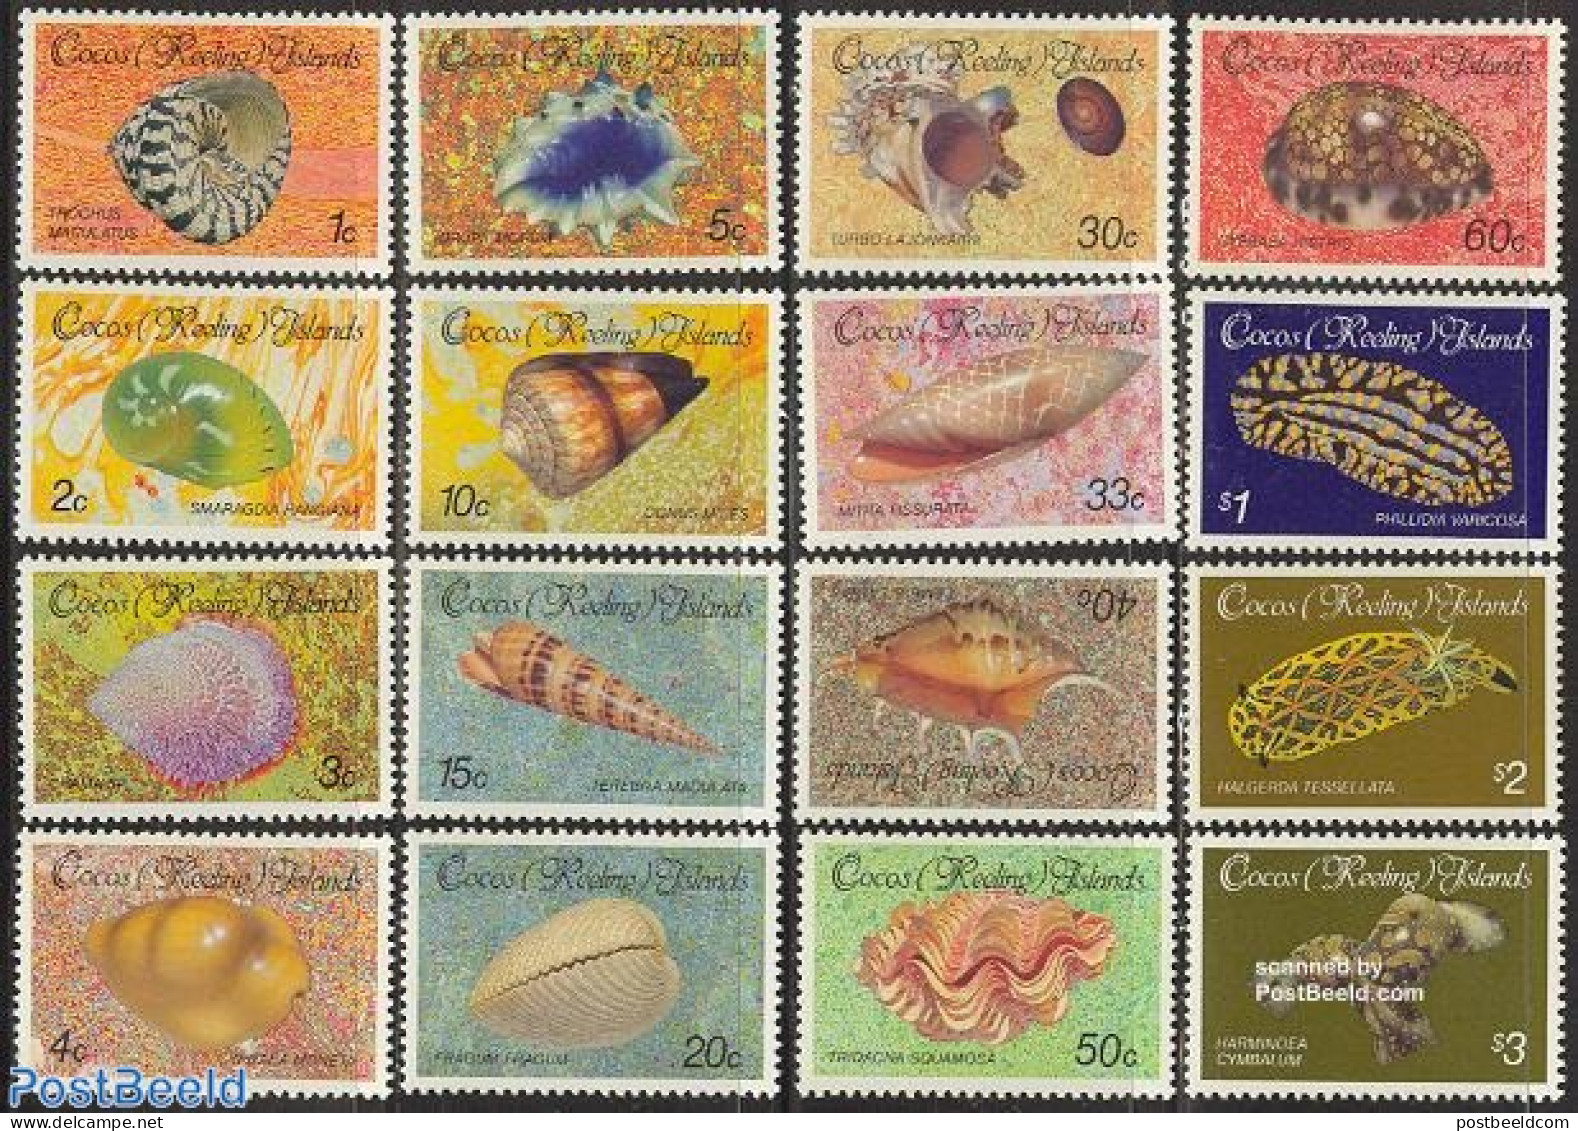 Cocos Islands 1985 Definitives, Shells 16v, Mint NH, Nature - Shells & Crustaceans - Mundo Aquatico